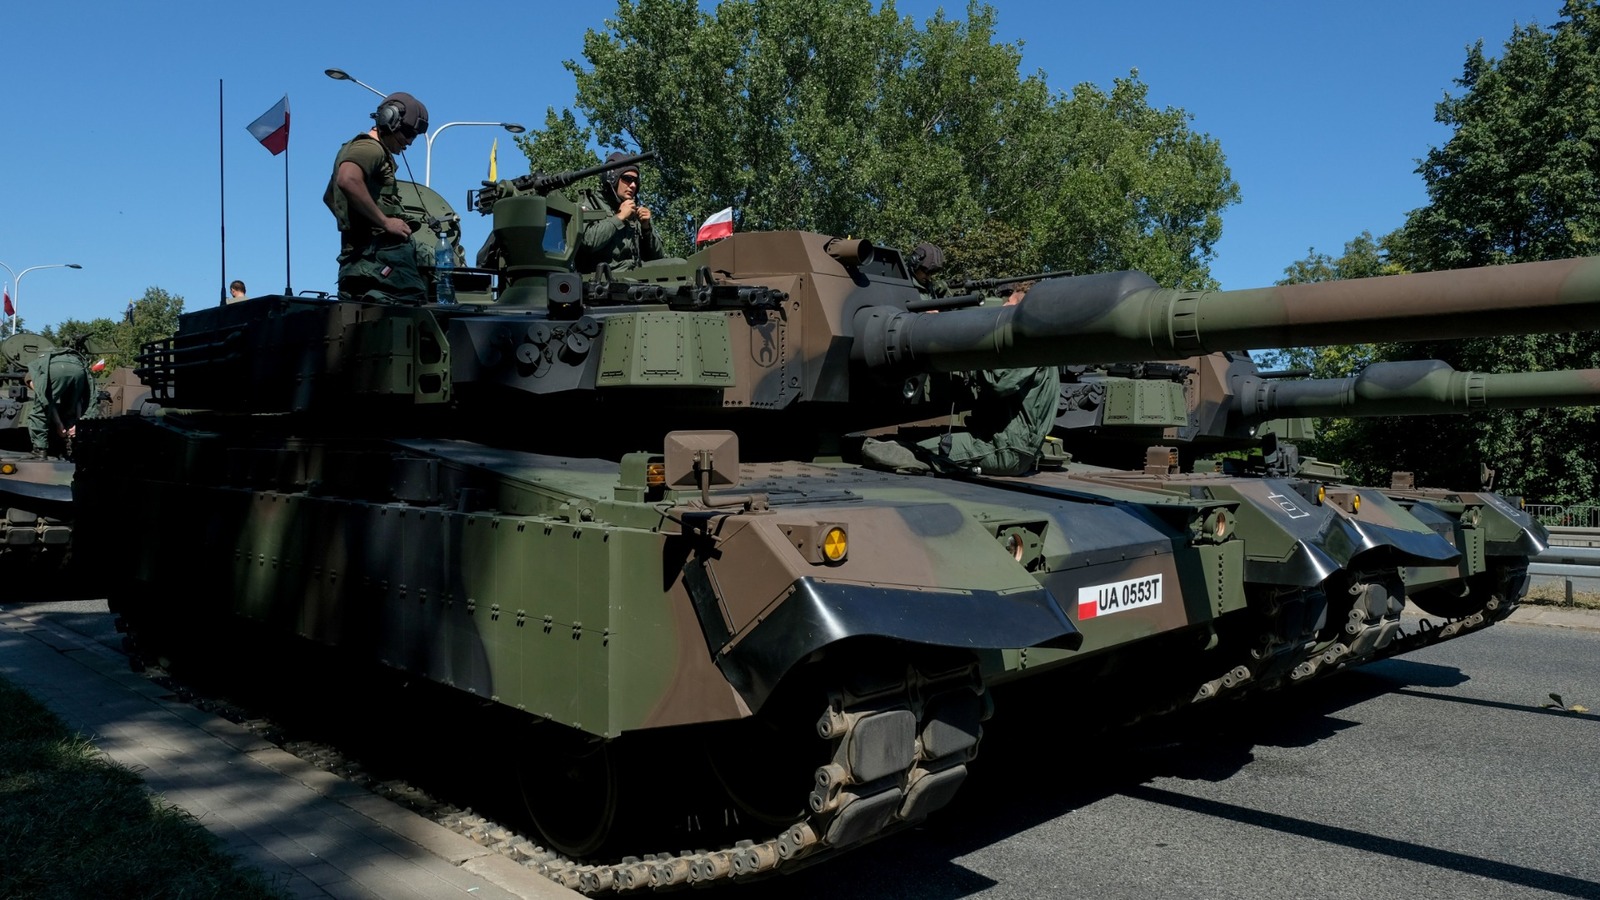 K2 Black Panther: South Korea's MBT Revolution